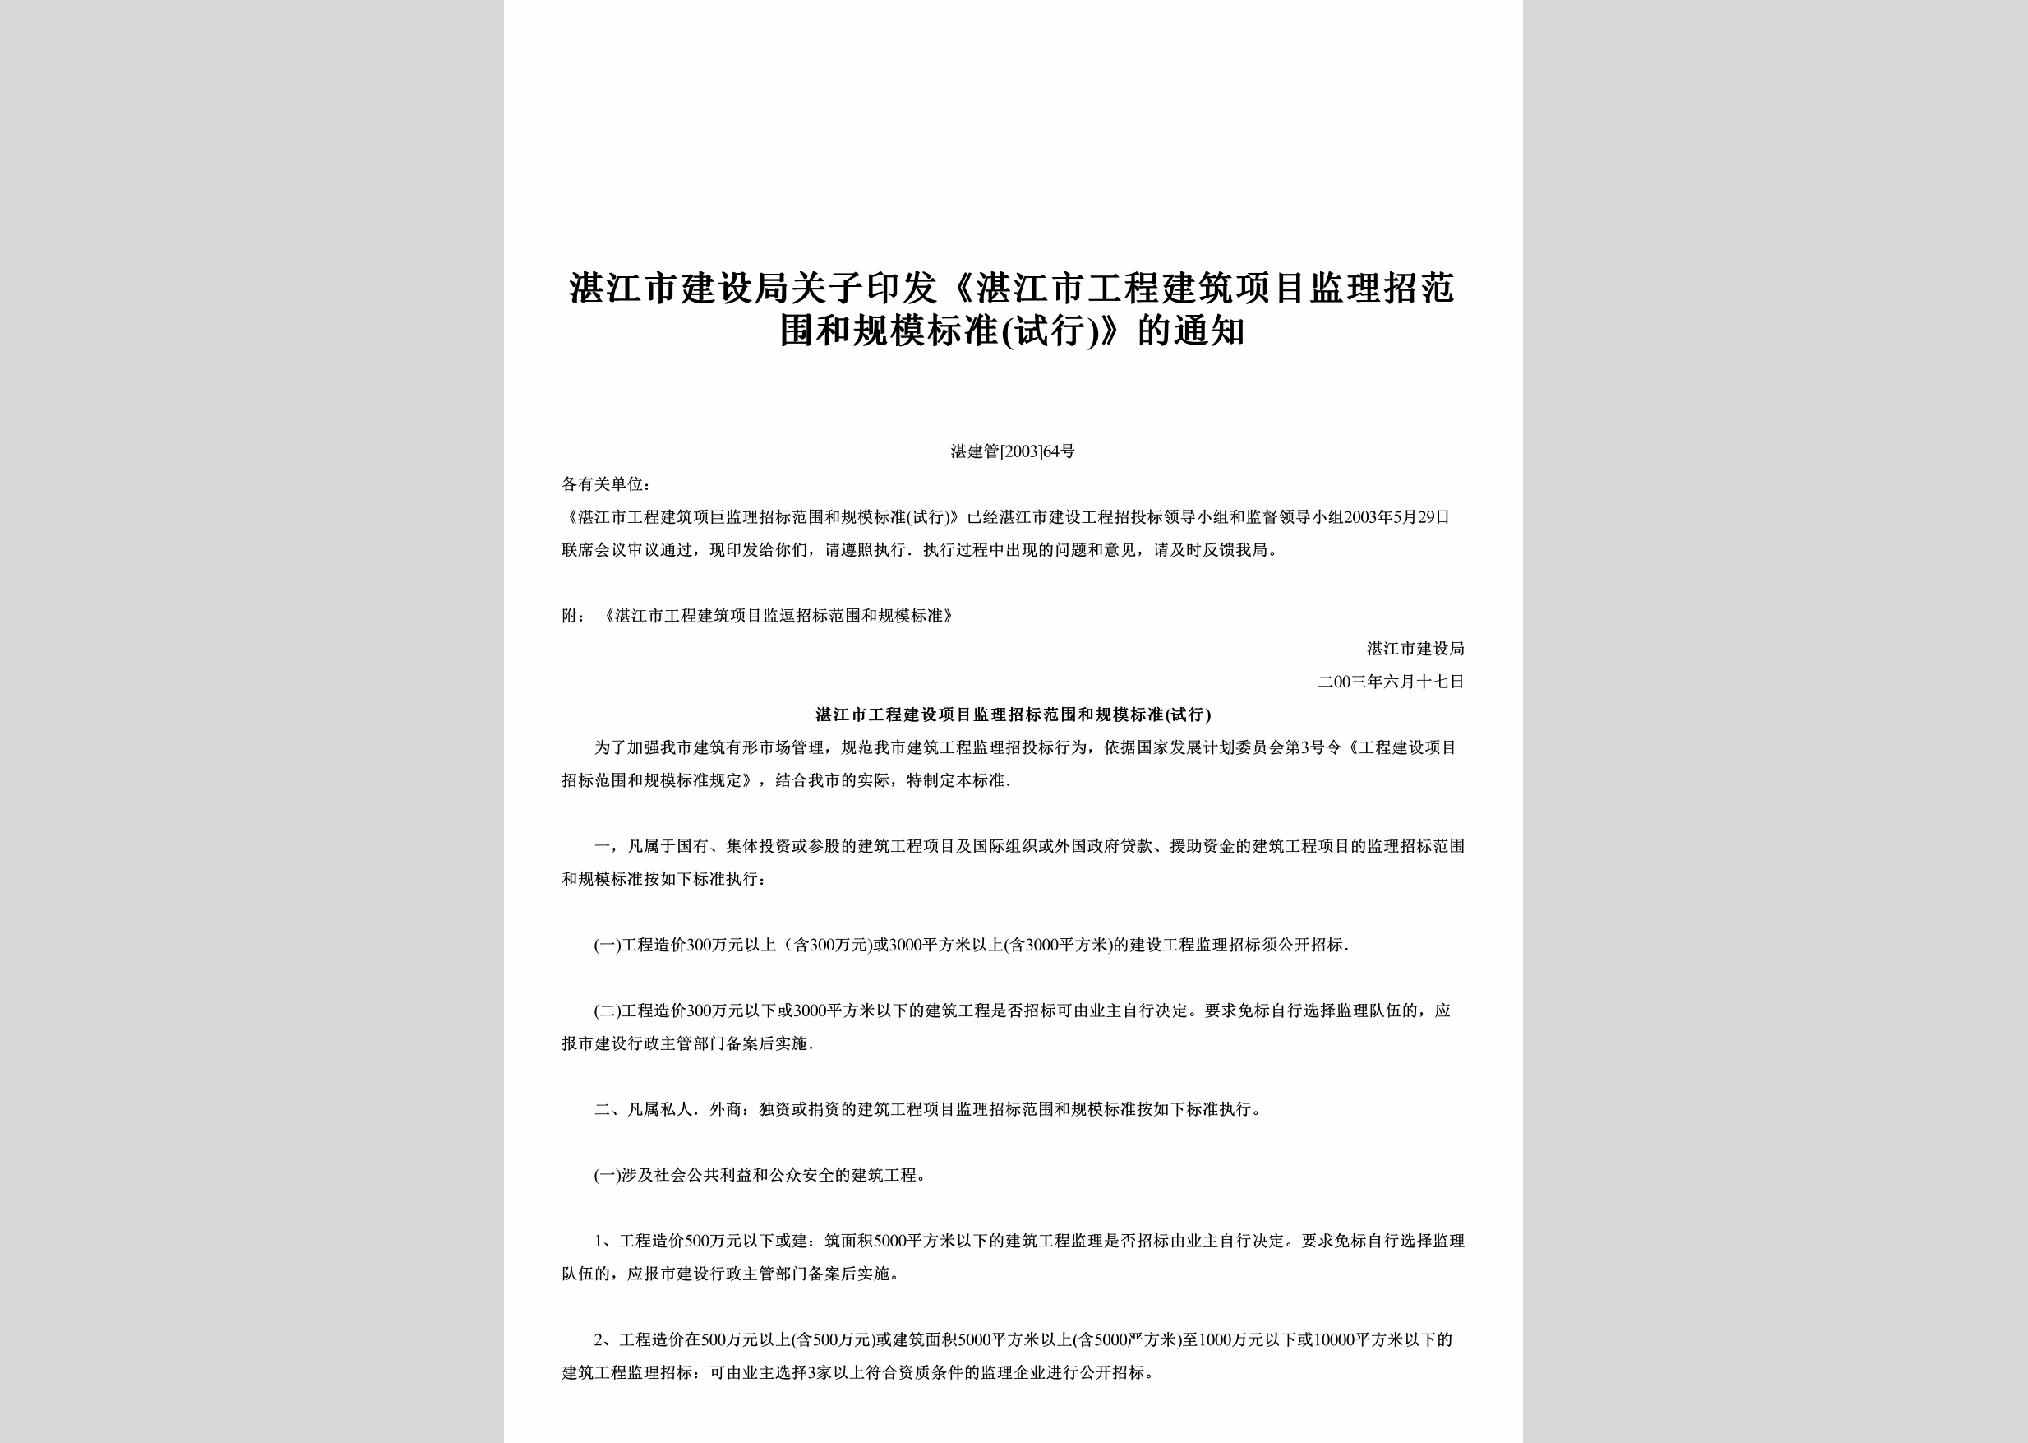 湛建管[2003]64号：关子印发《湛江市工程建筑项目监理招范围和规模标准(试行)》的通知